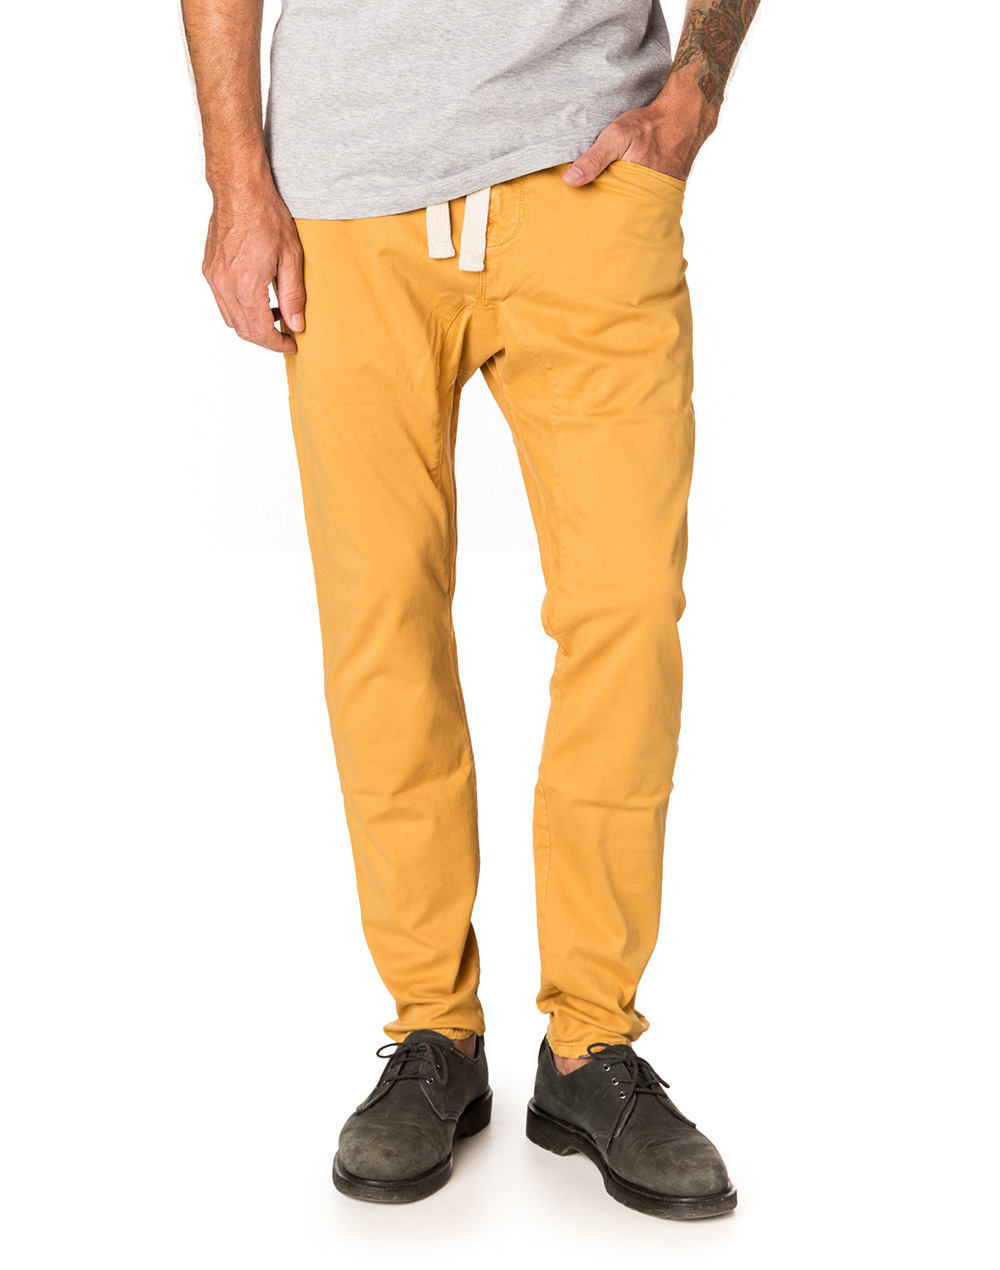 pantalon jaune homme avec quoi